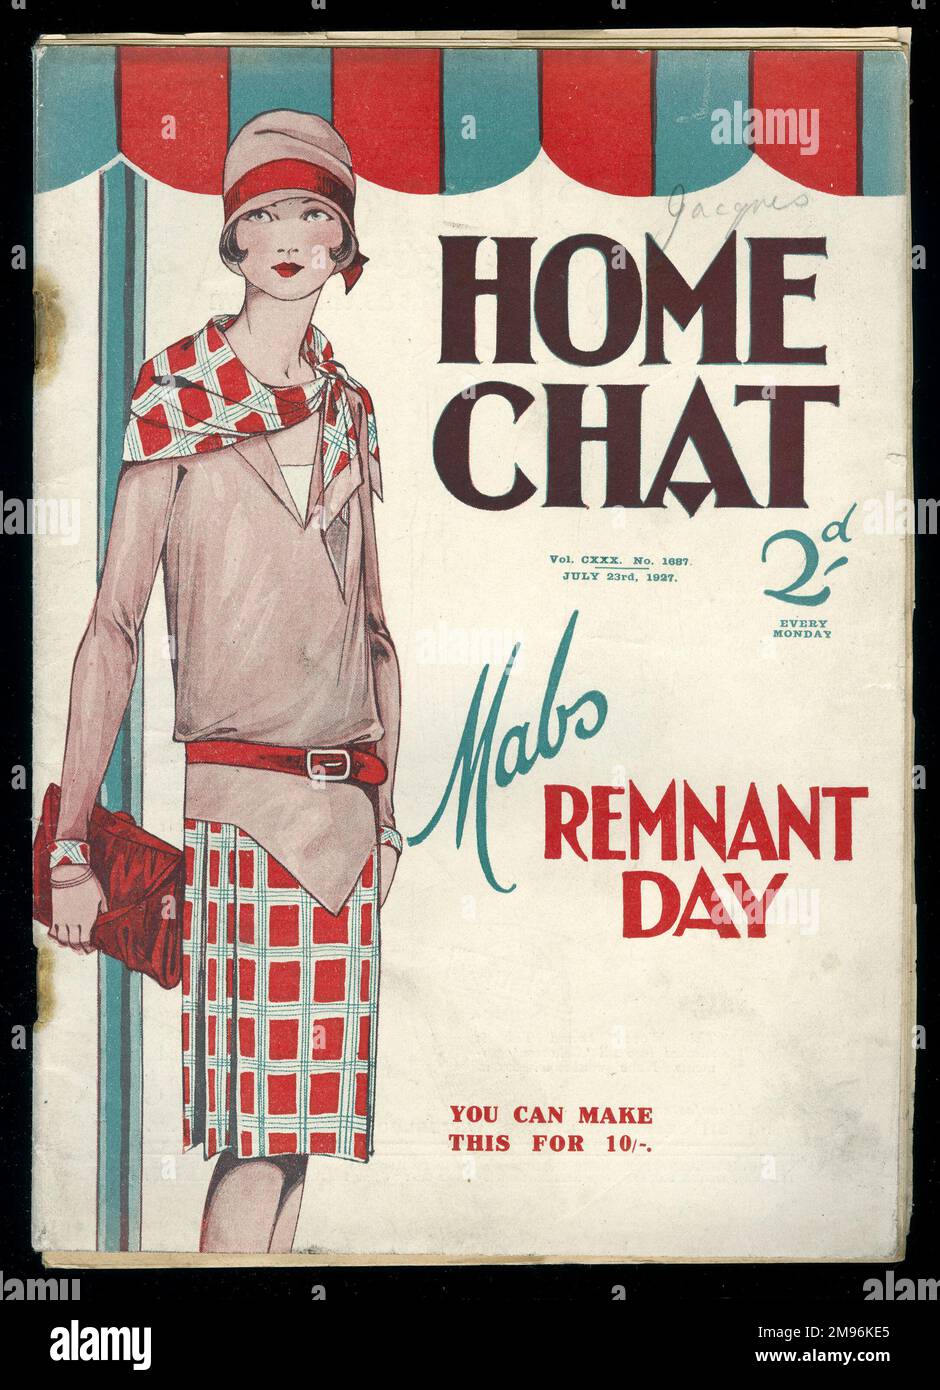 Titelseite des Magazins „Home Chat“, das eine junge Frau in elegantem Outfit zeigt, um den mAbs Remnant Day zu illustrieren (für zehn Schilling). Stockfoto